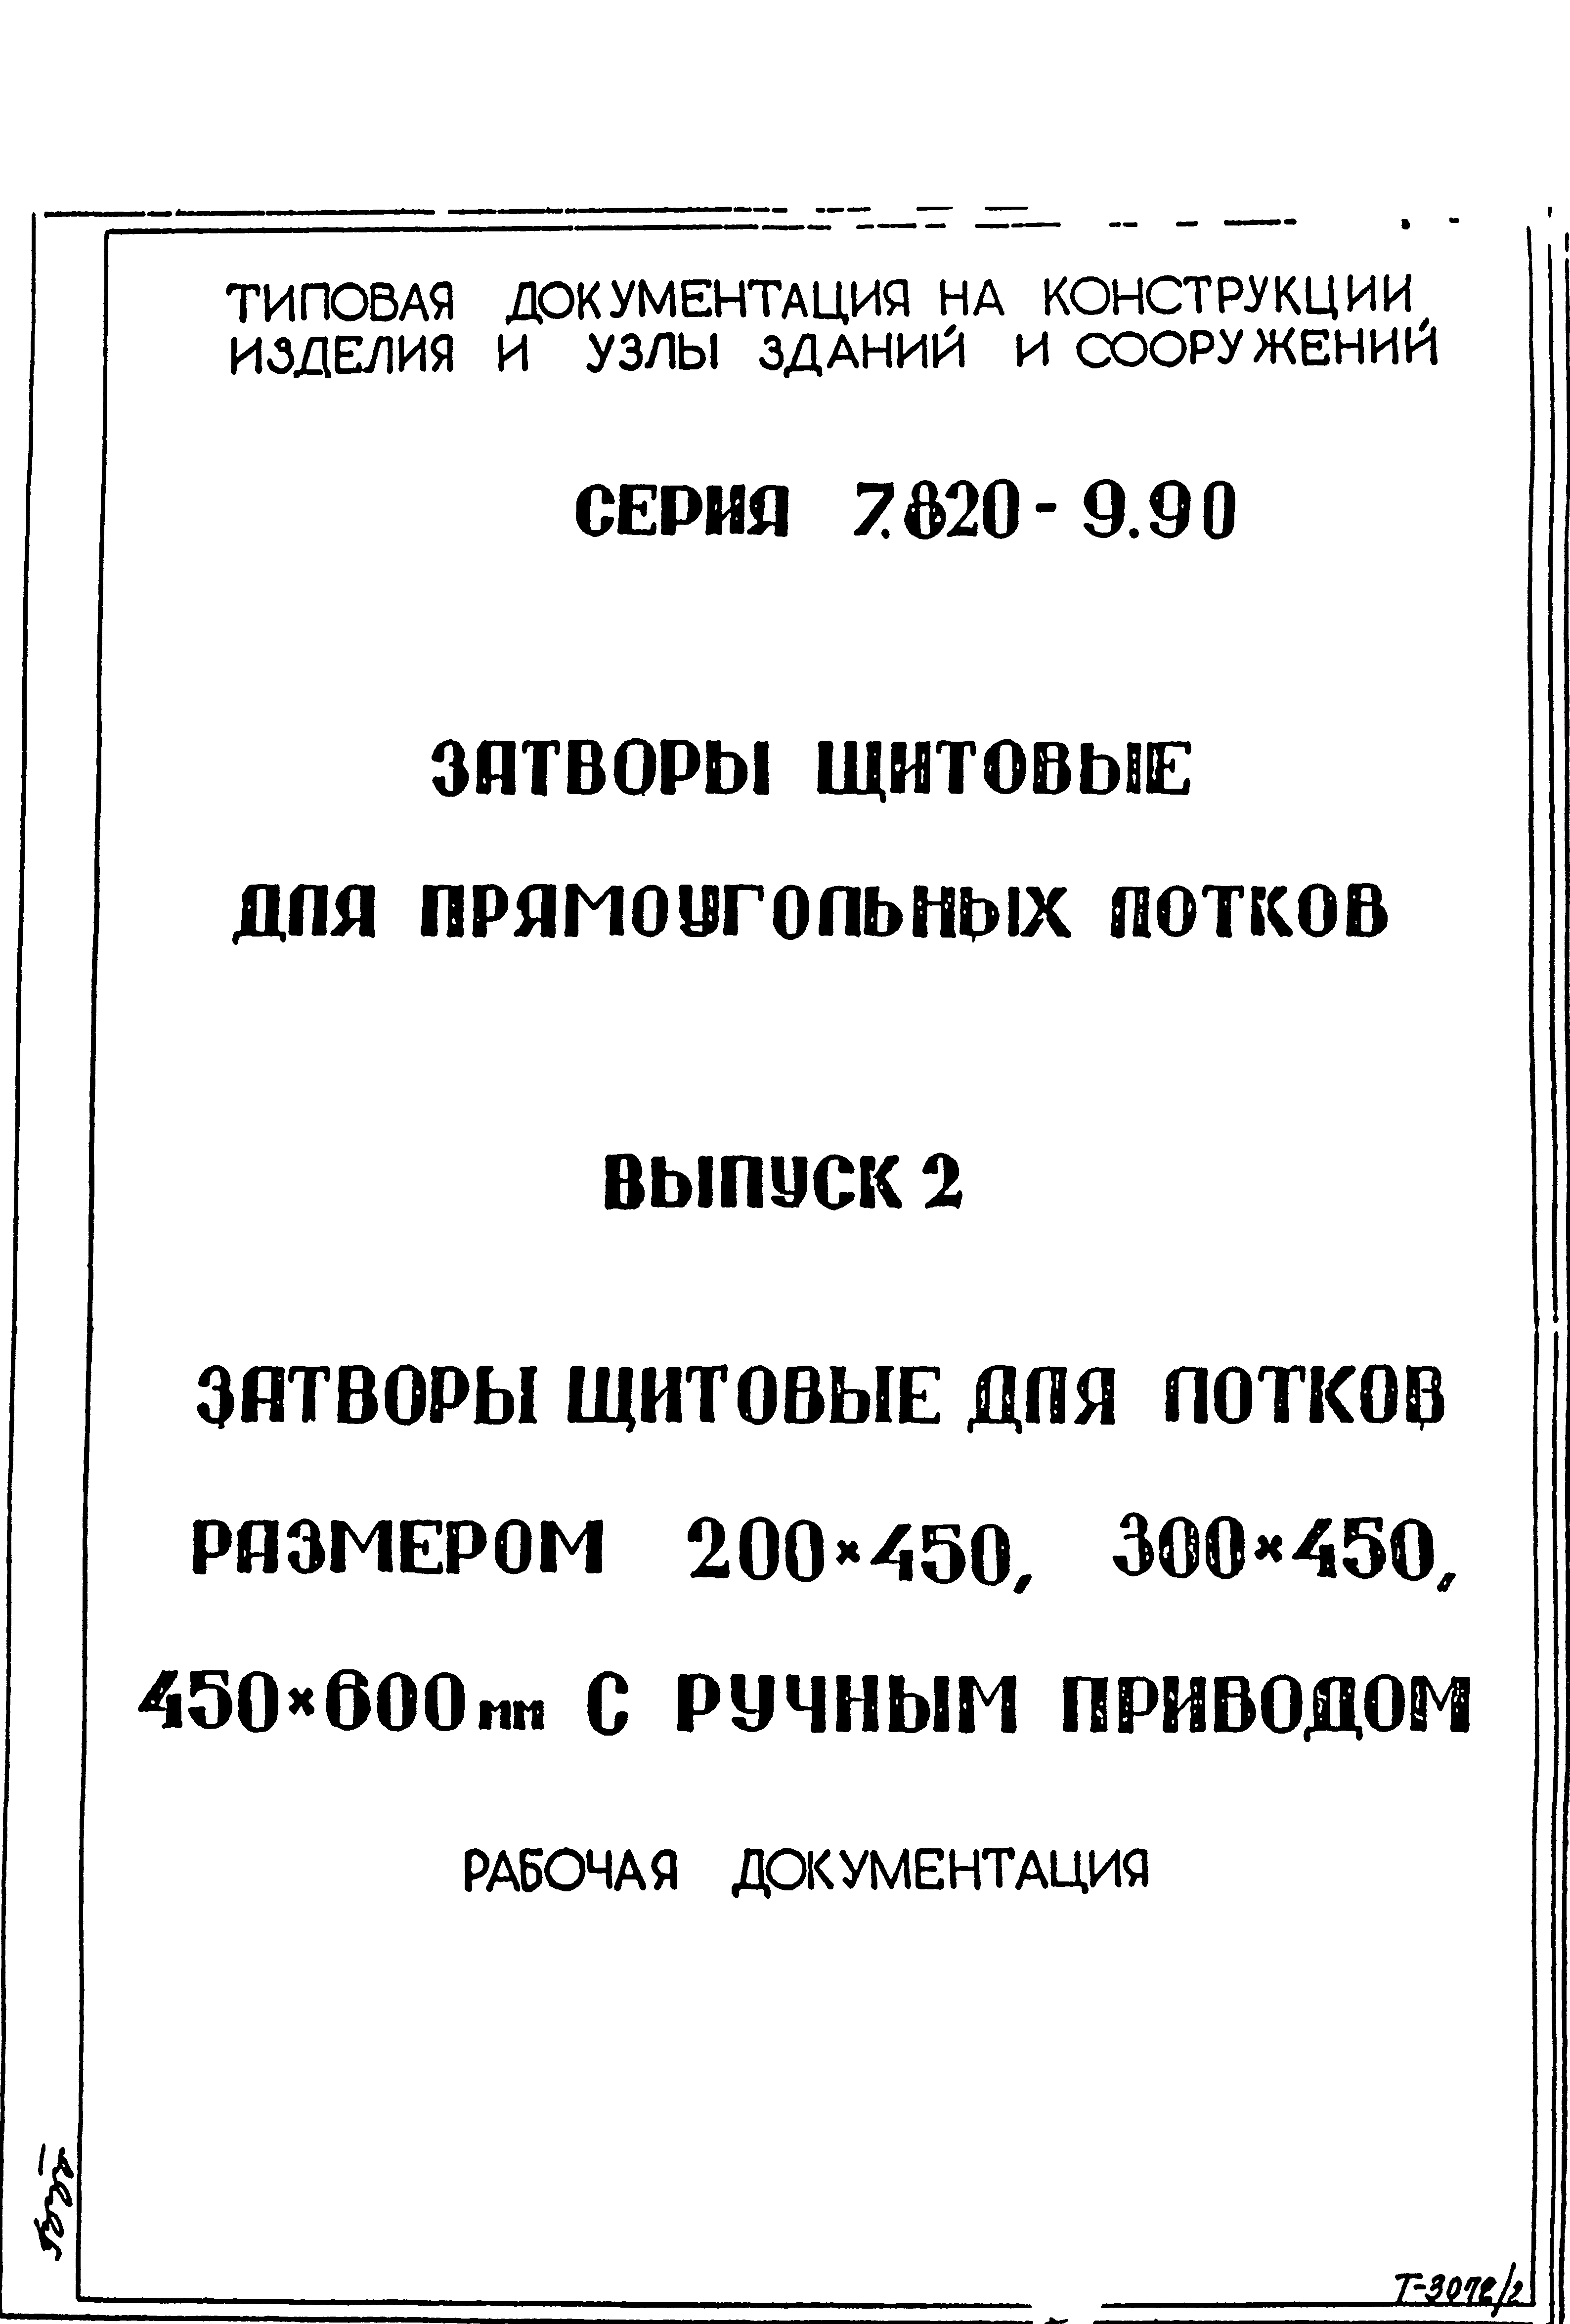 Серия 7.820-9.90